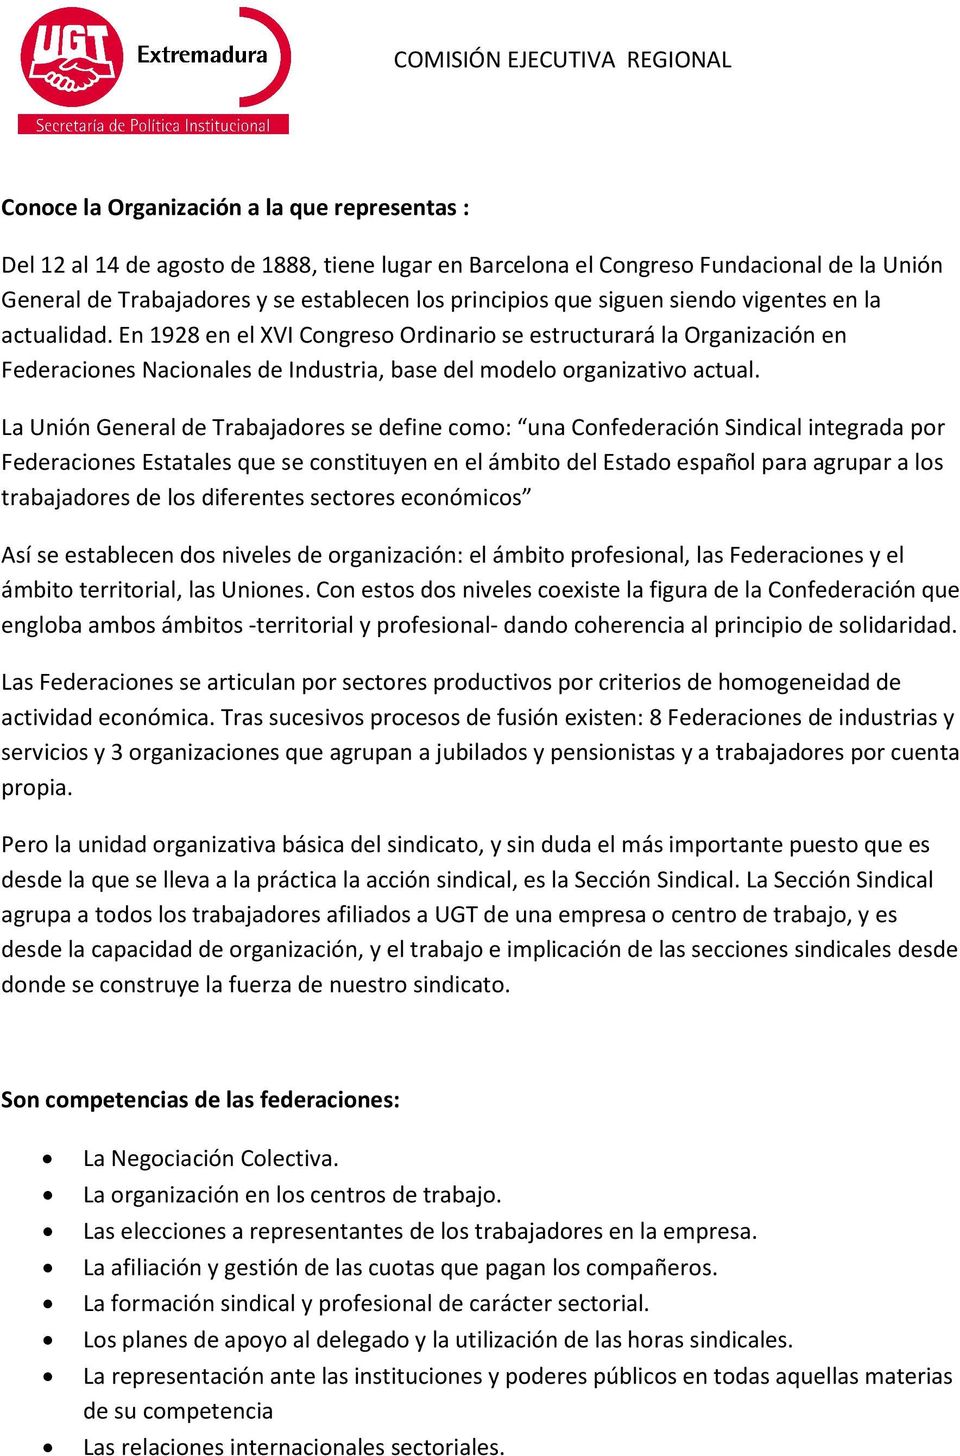 La Unión General de Trabajadores se define como: una Confederación Sindical integrada por Federaciones Estatales que se constituyen en el ámbito del Estado español para agrupar a los trabajadores de